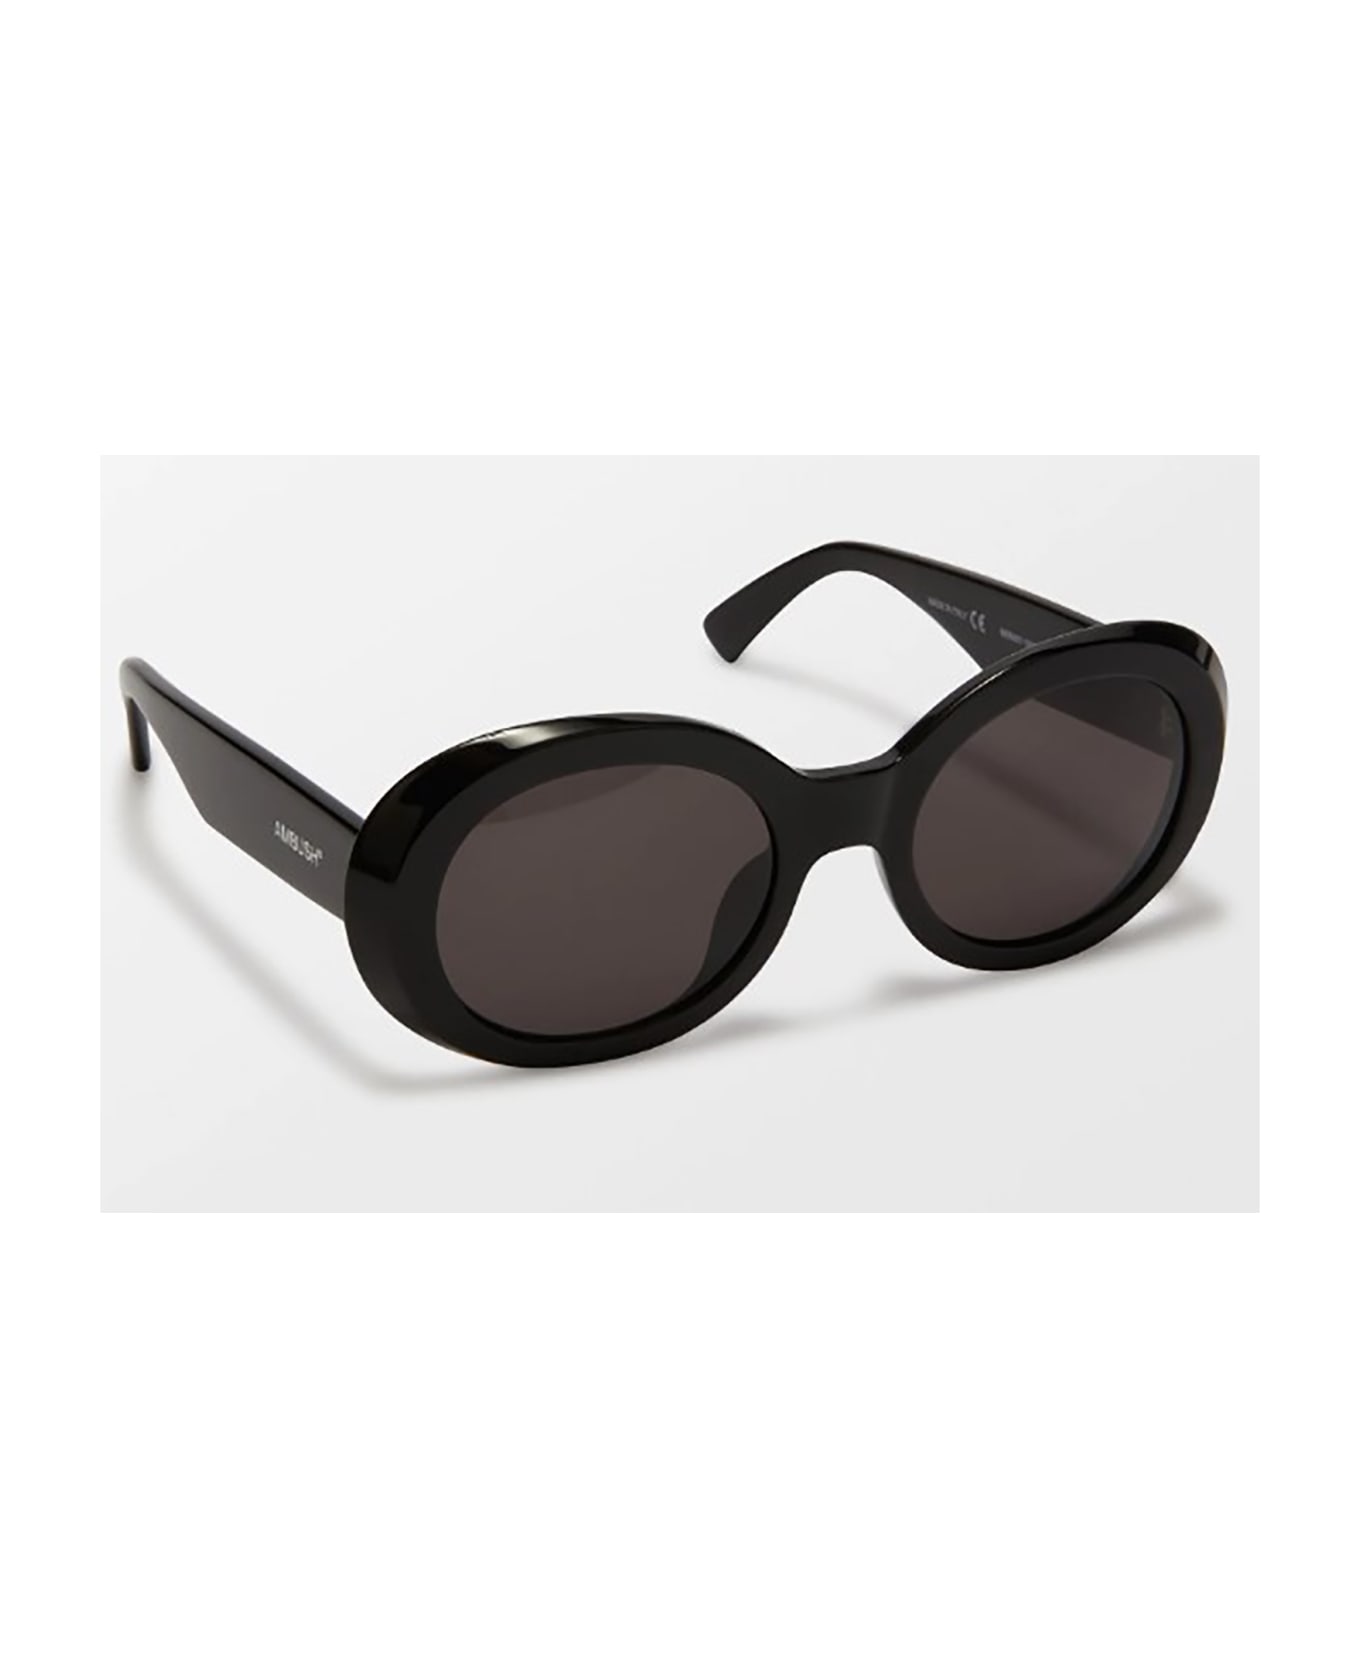 AMBUSH KURT SUNGLASSES Sunglasses - Black